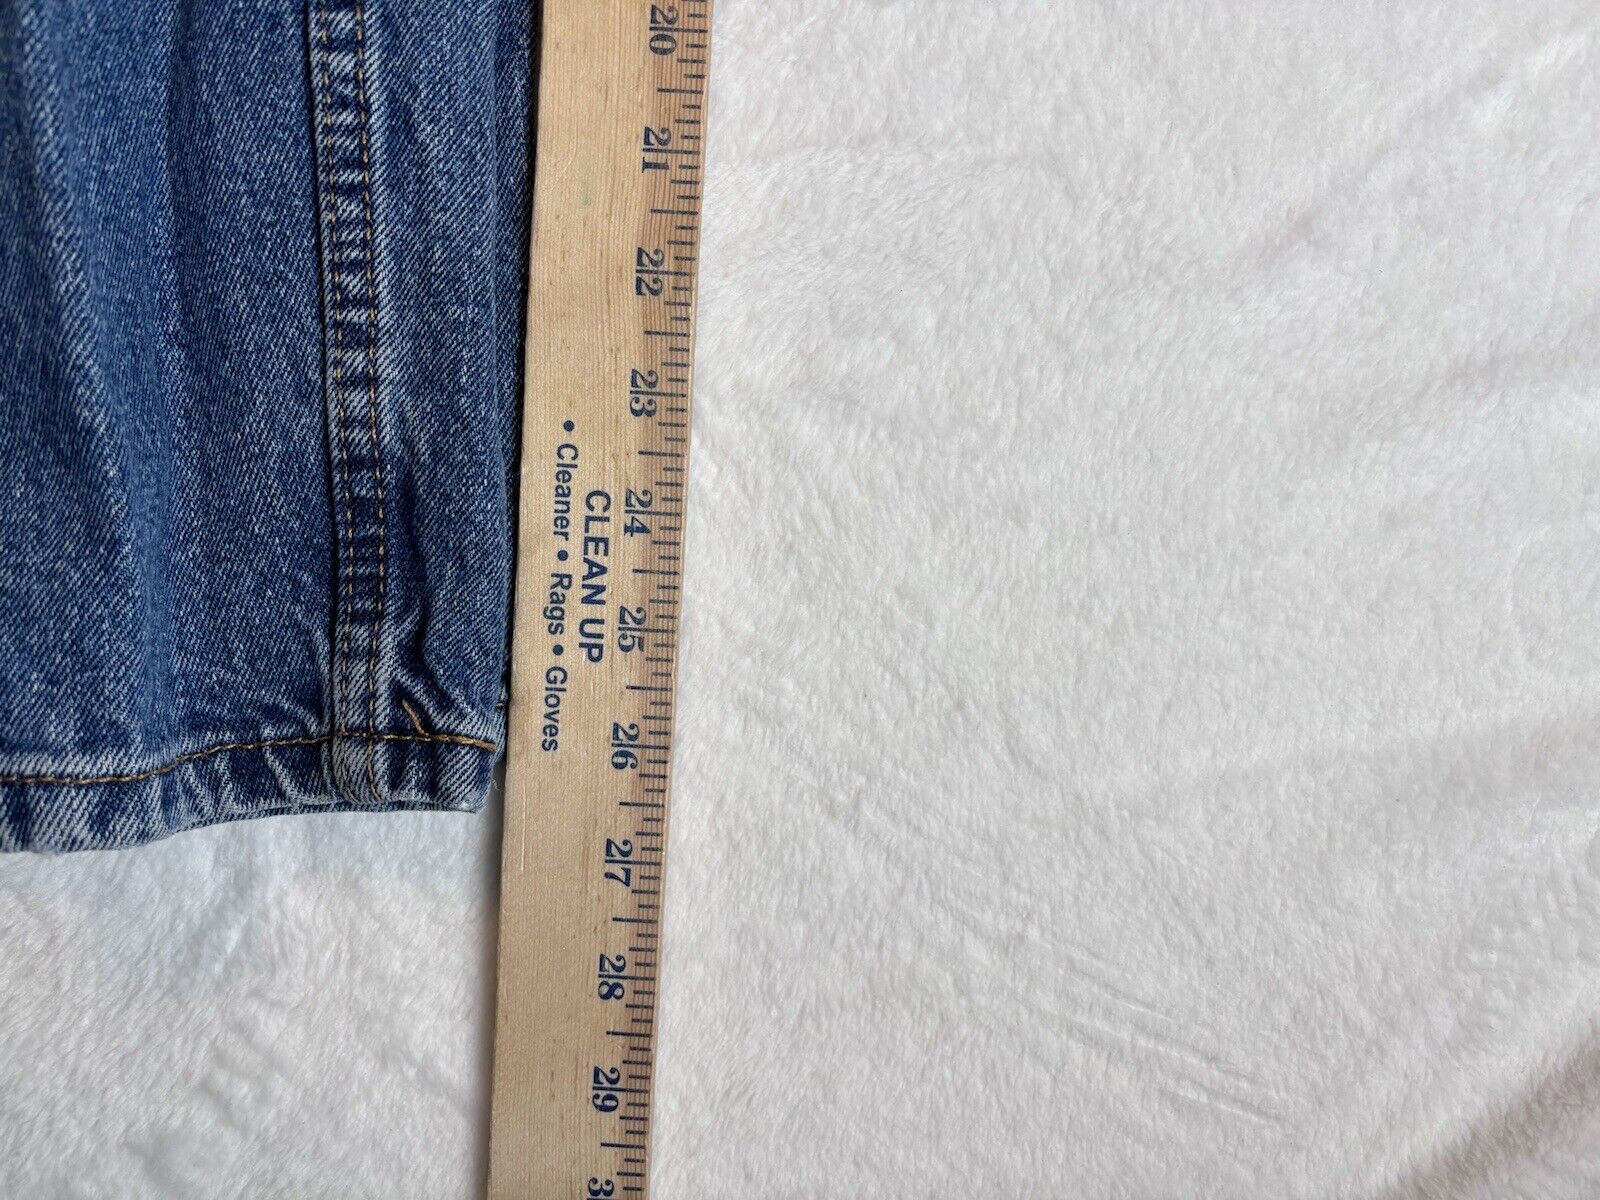 Levi's 505 Blue Jeans Men's Waist 36" x 26" Inseam - image 6